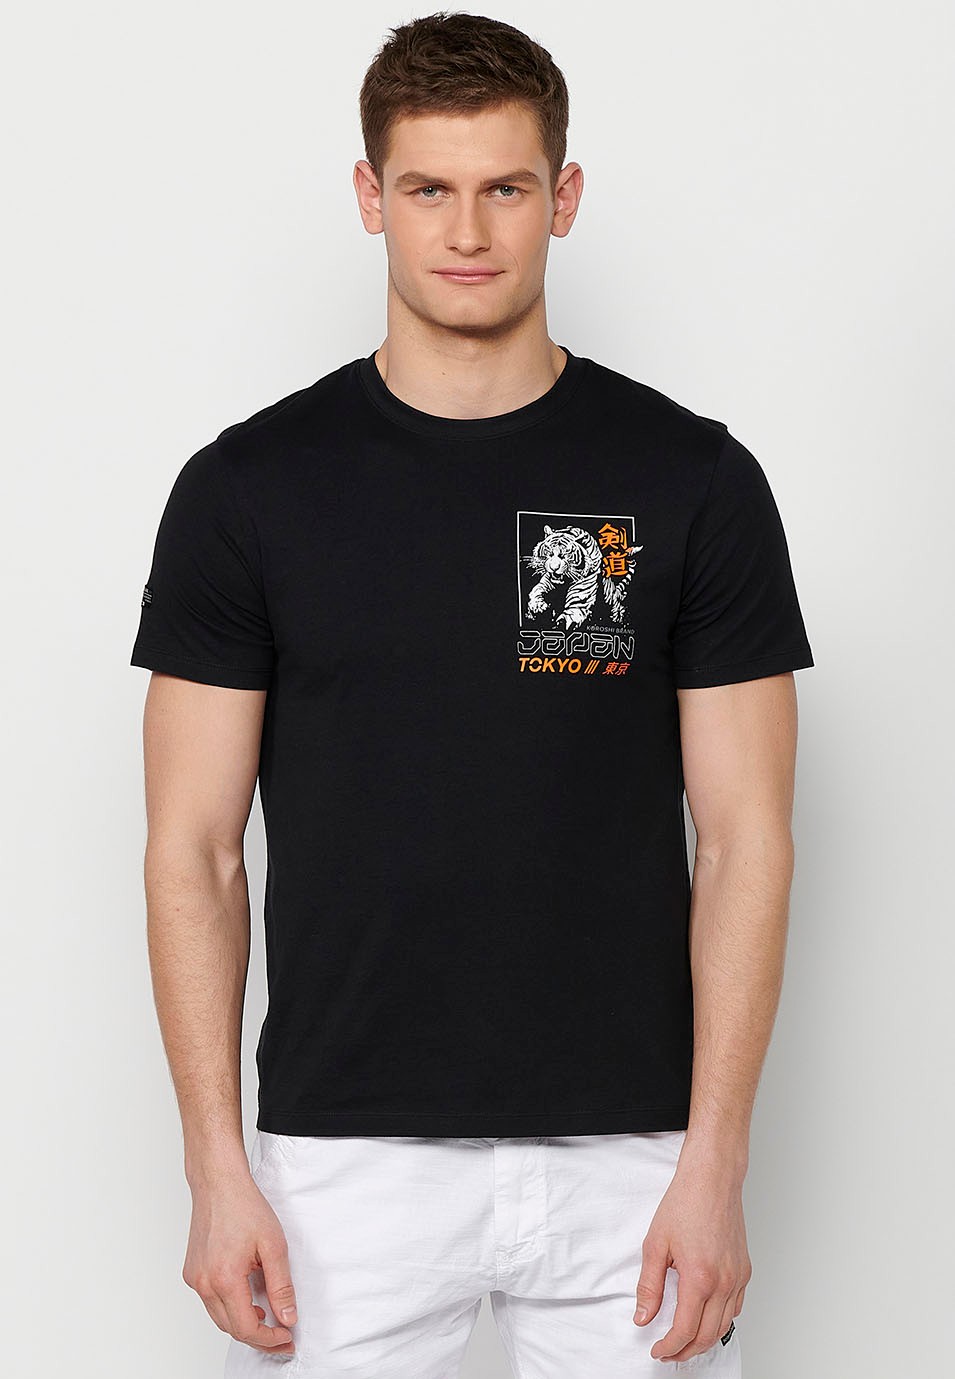 Camiseta de manga corta de algodon y estampado trasero jungle tigger, color negro para hombre